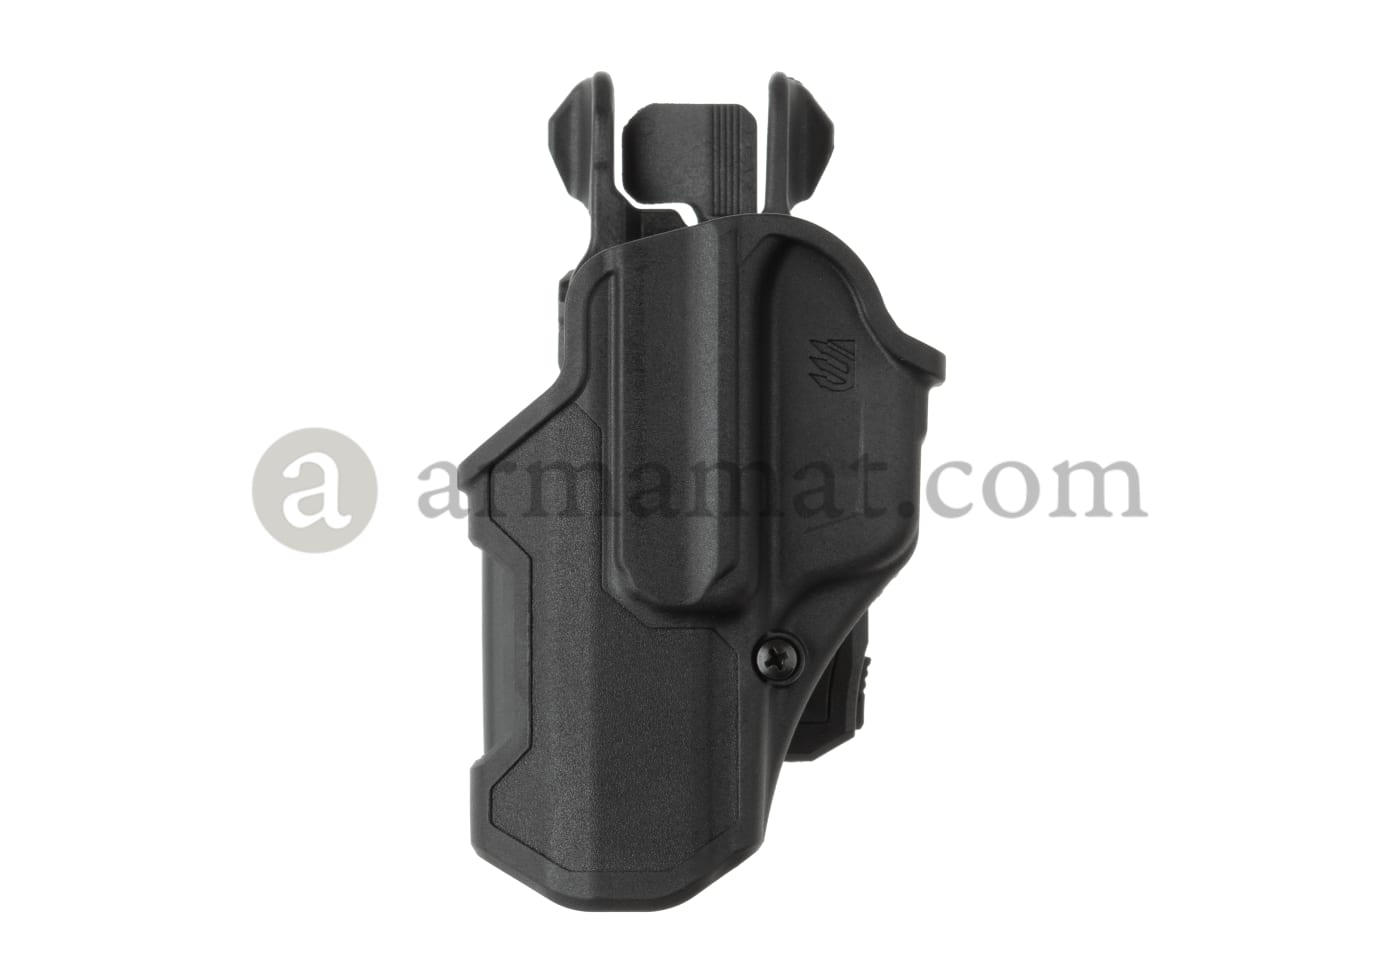 Blackhawk® T-Series L2C Concealment Holster Overview 